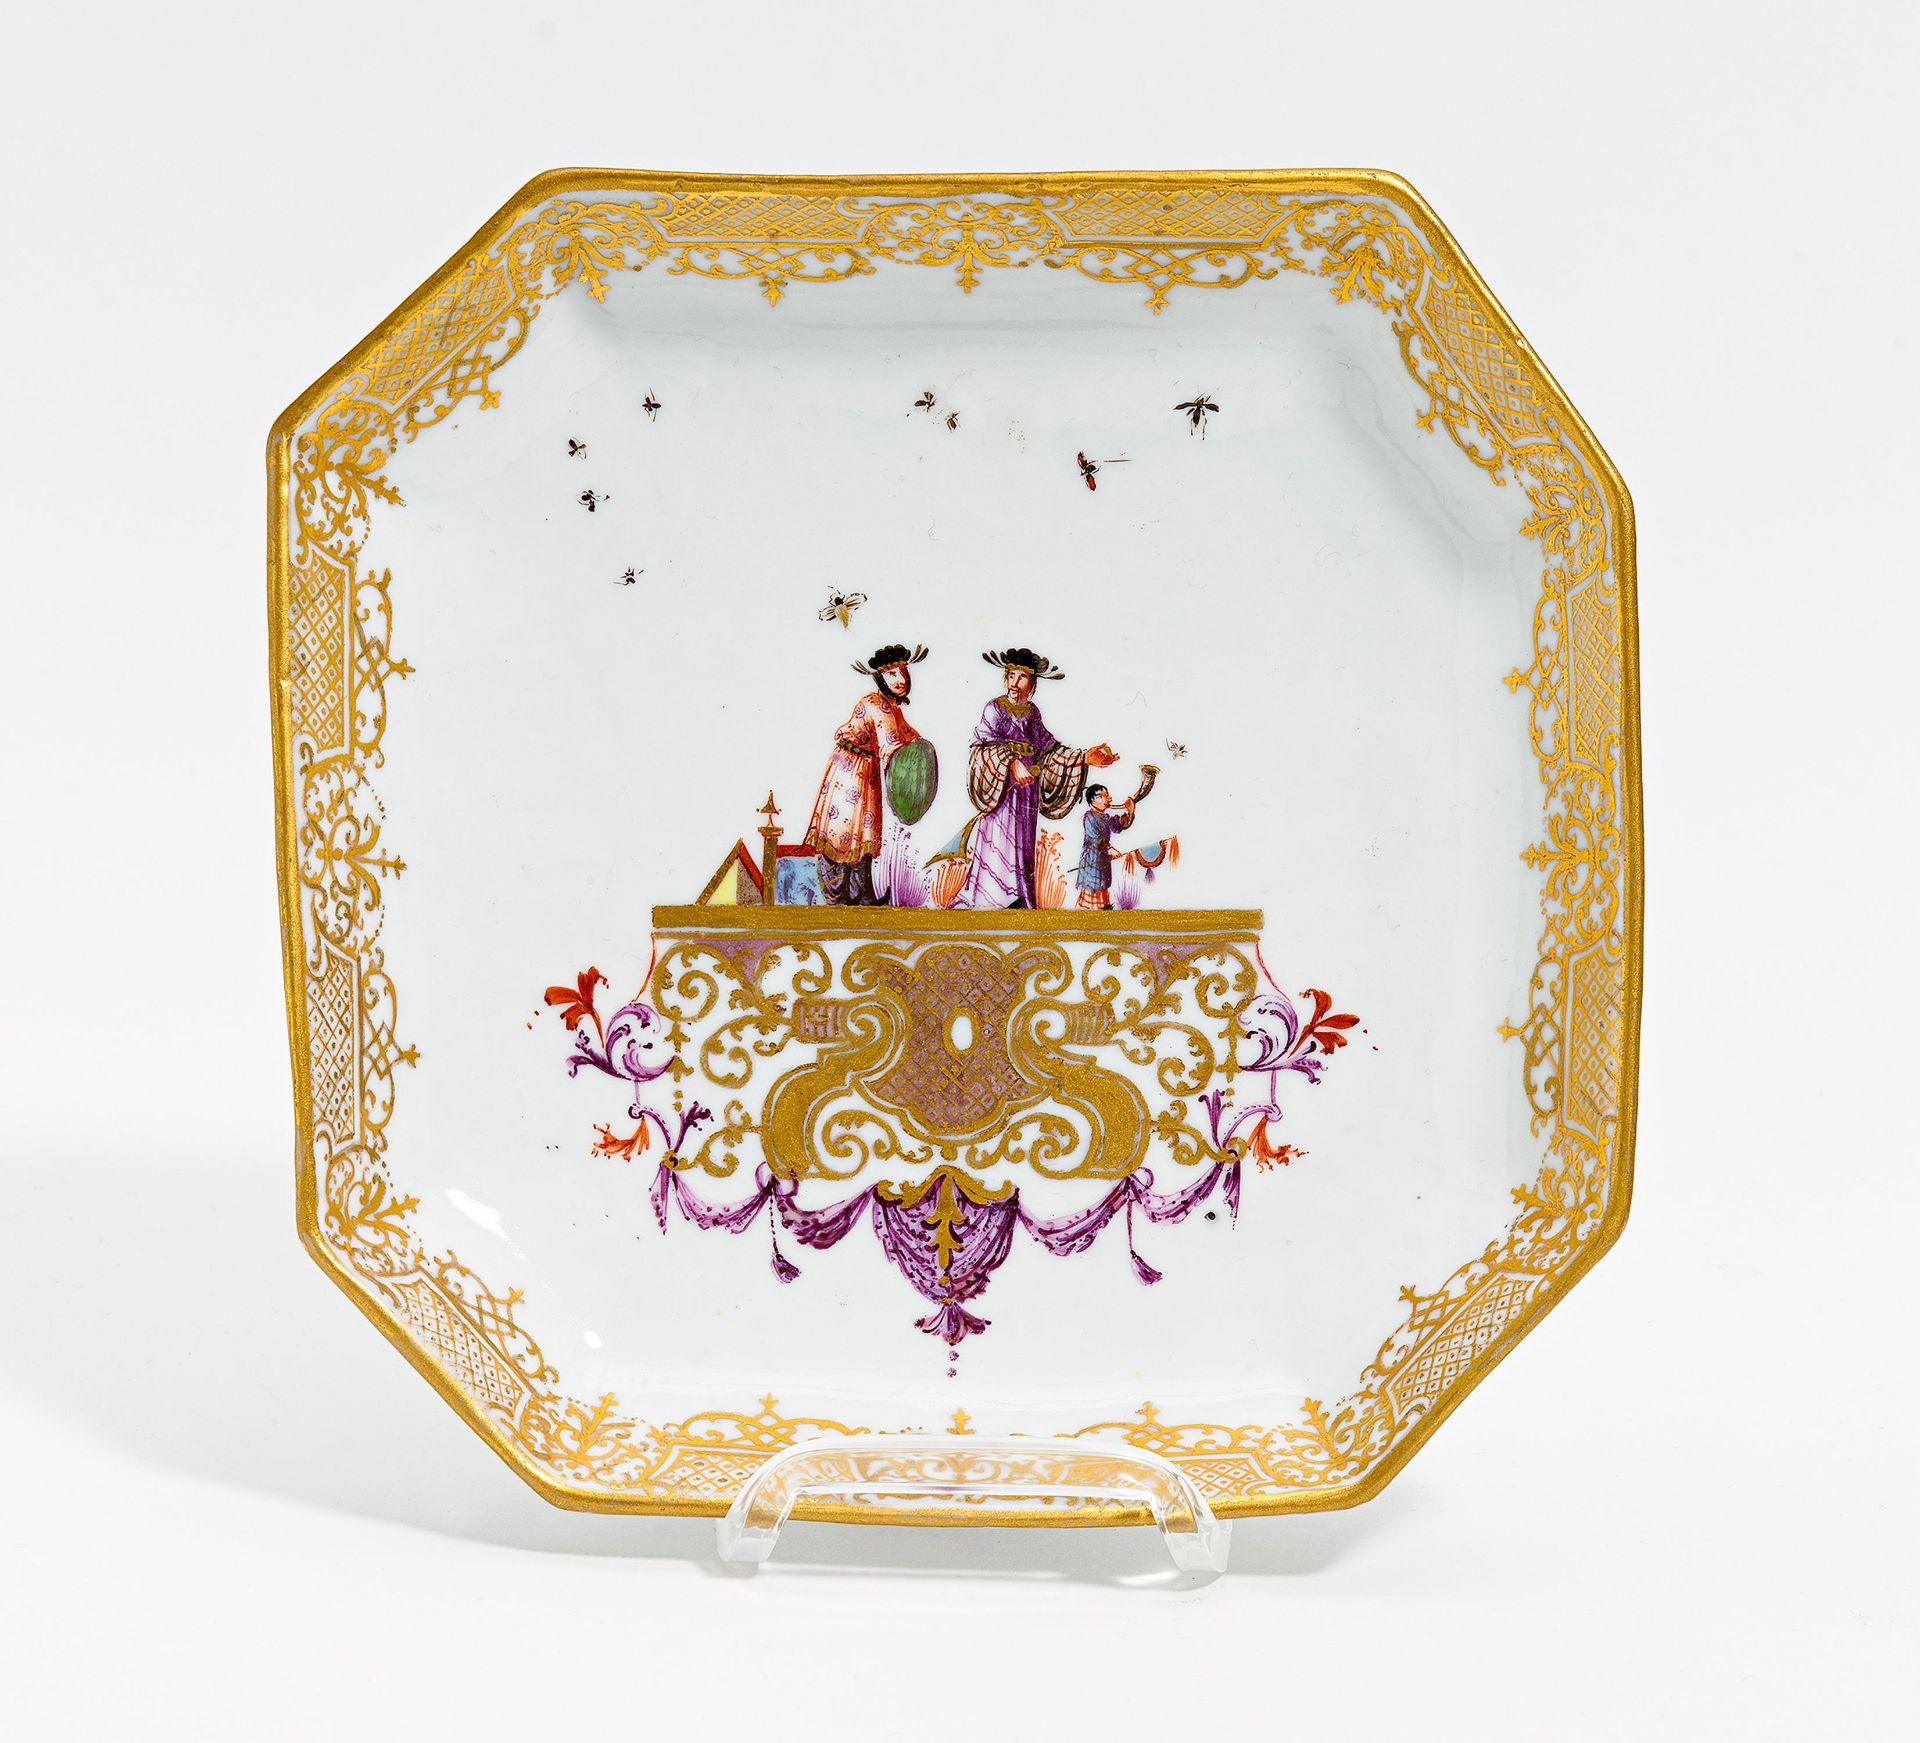 OKTOGONALE SCHALE MIT CHINOISERIEN. Meissen. Um 1735-40. Porzellan, farbig und gold dekoriert.